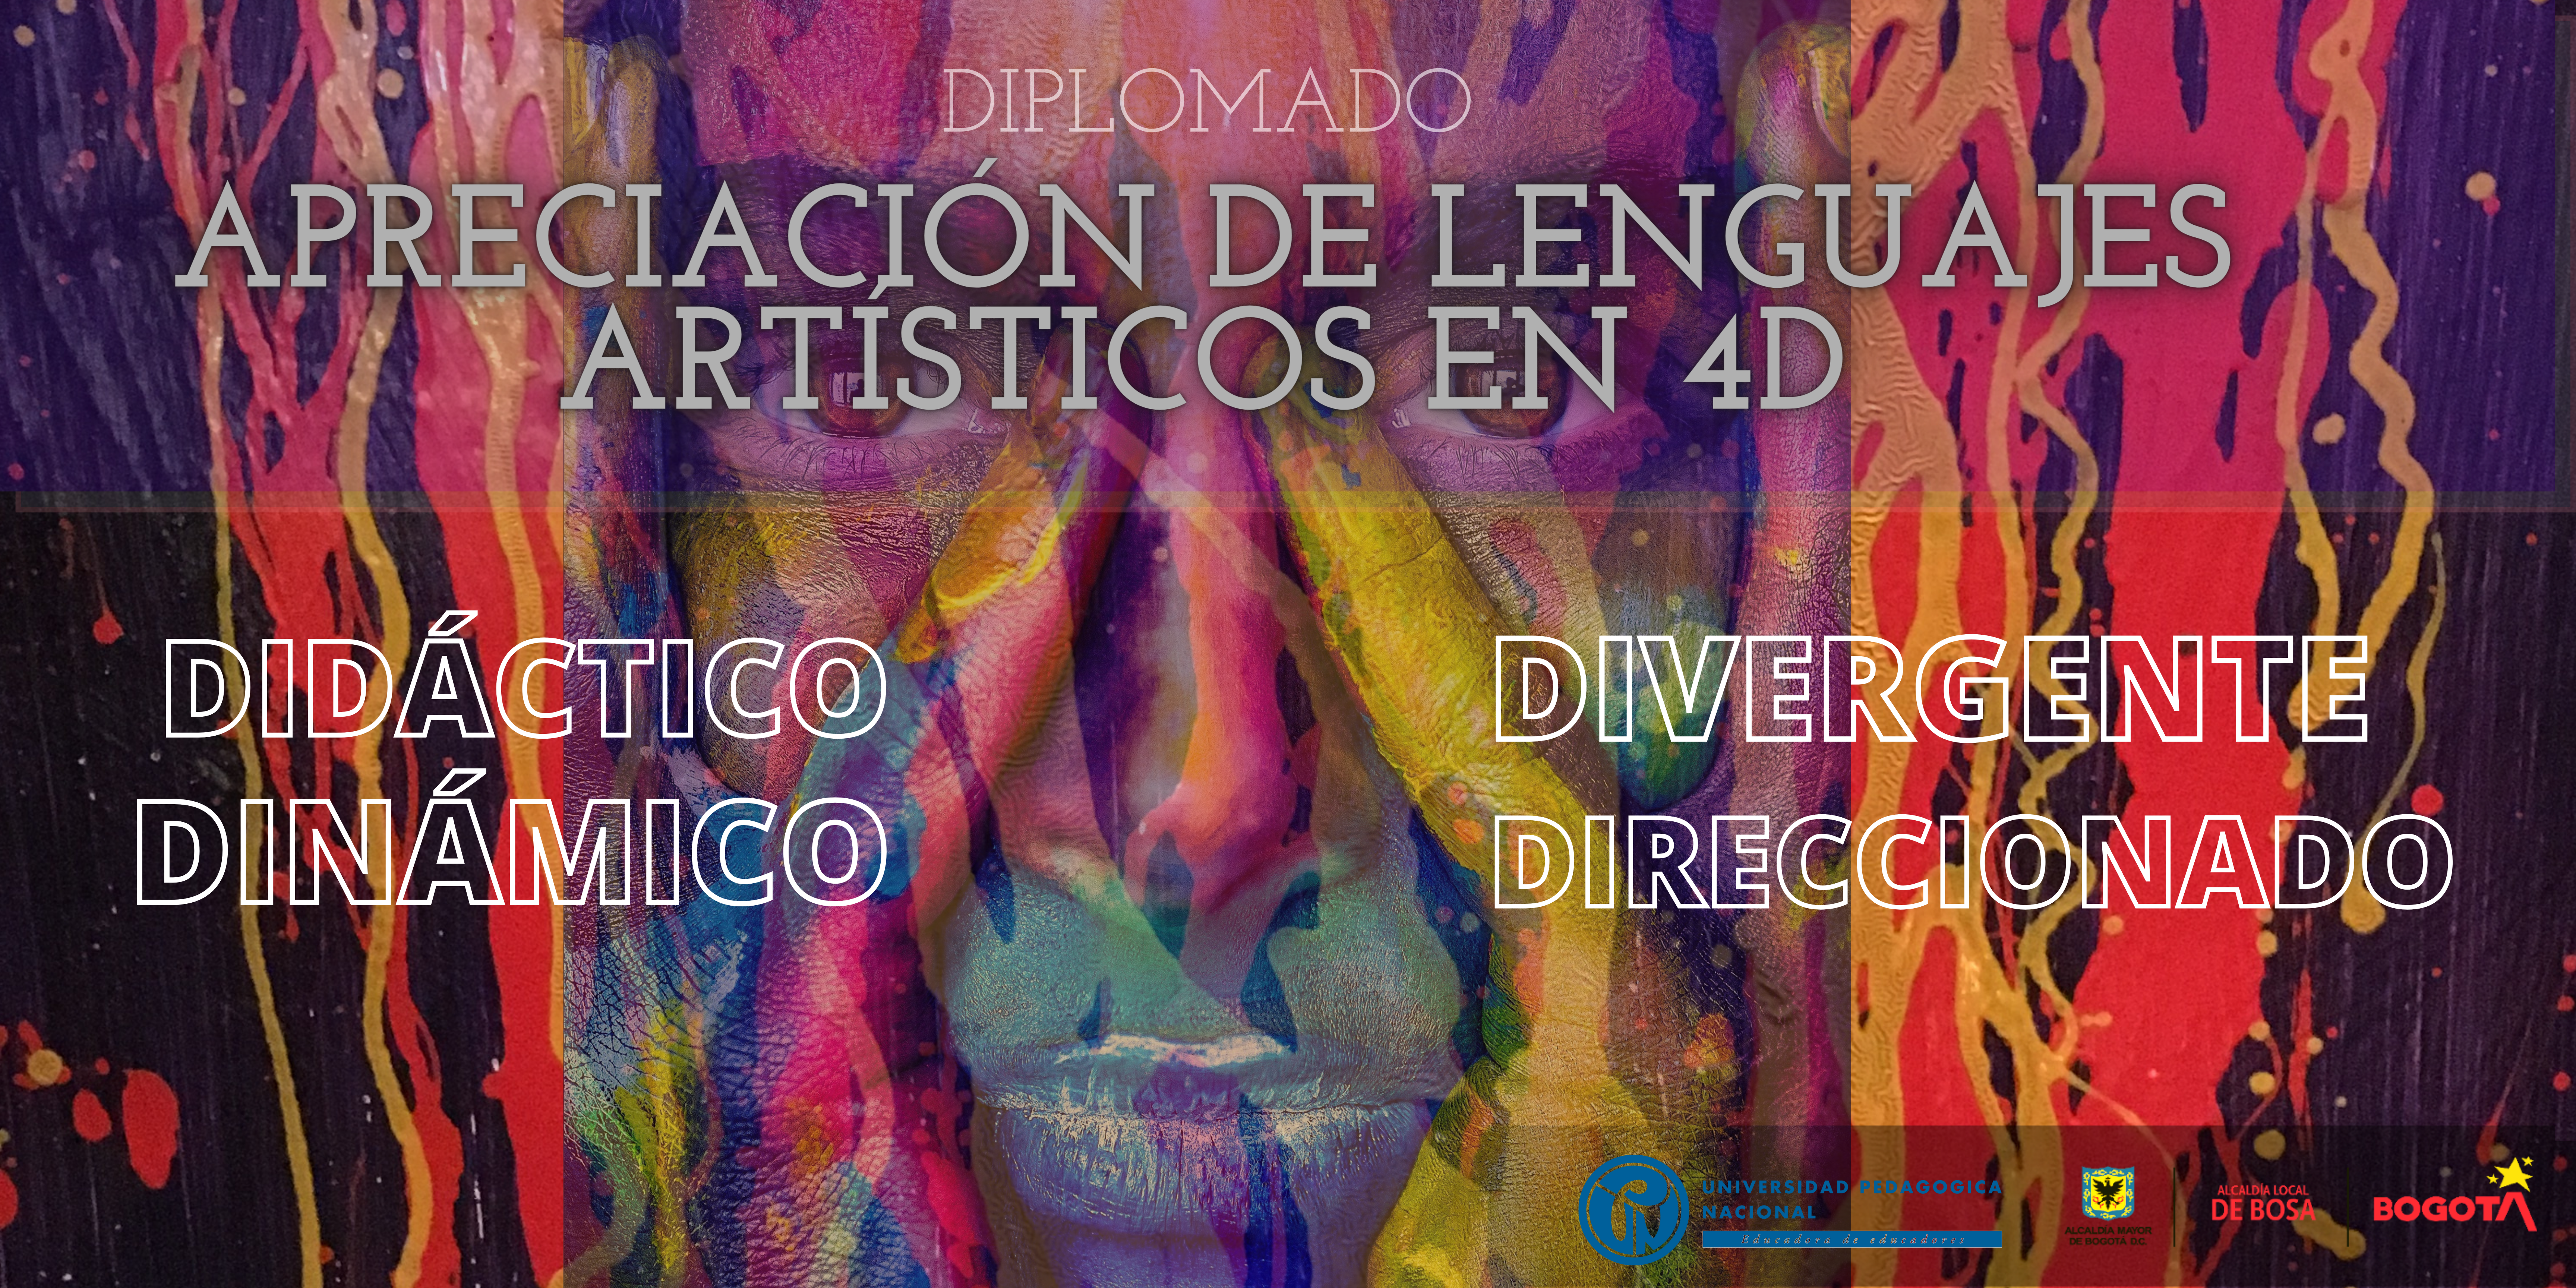 Apreciación de lenguajes artísticos en 4D  (80 horas de formación) Apreciación de lenguajes artísticos en 4D: didáctico, dinámico, divergente y direccionado